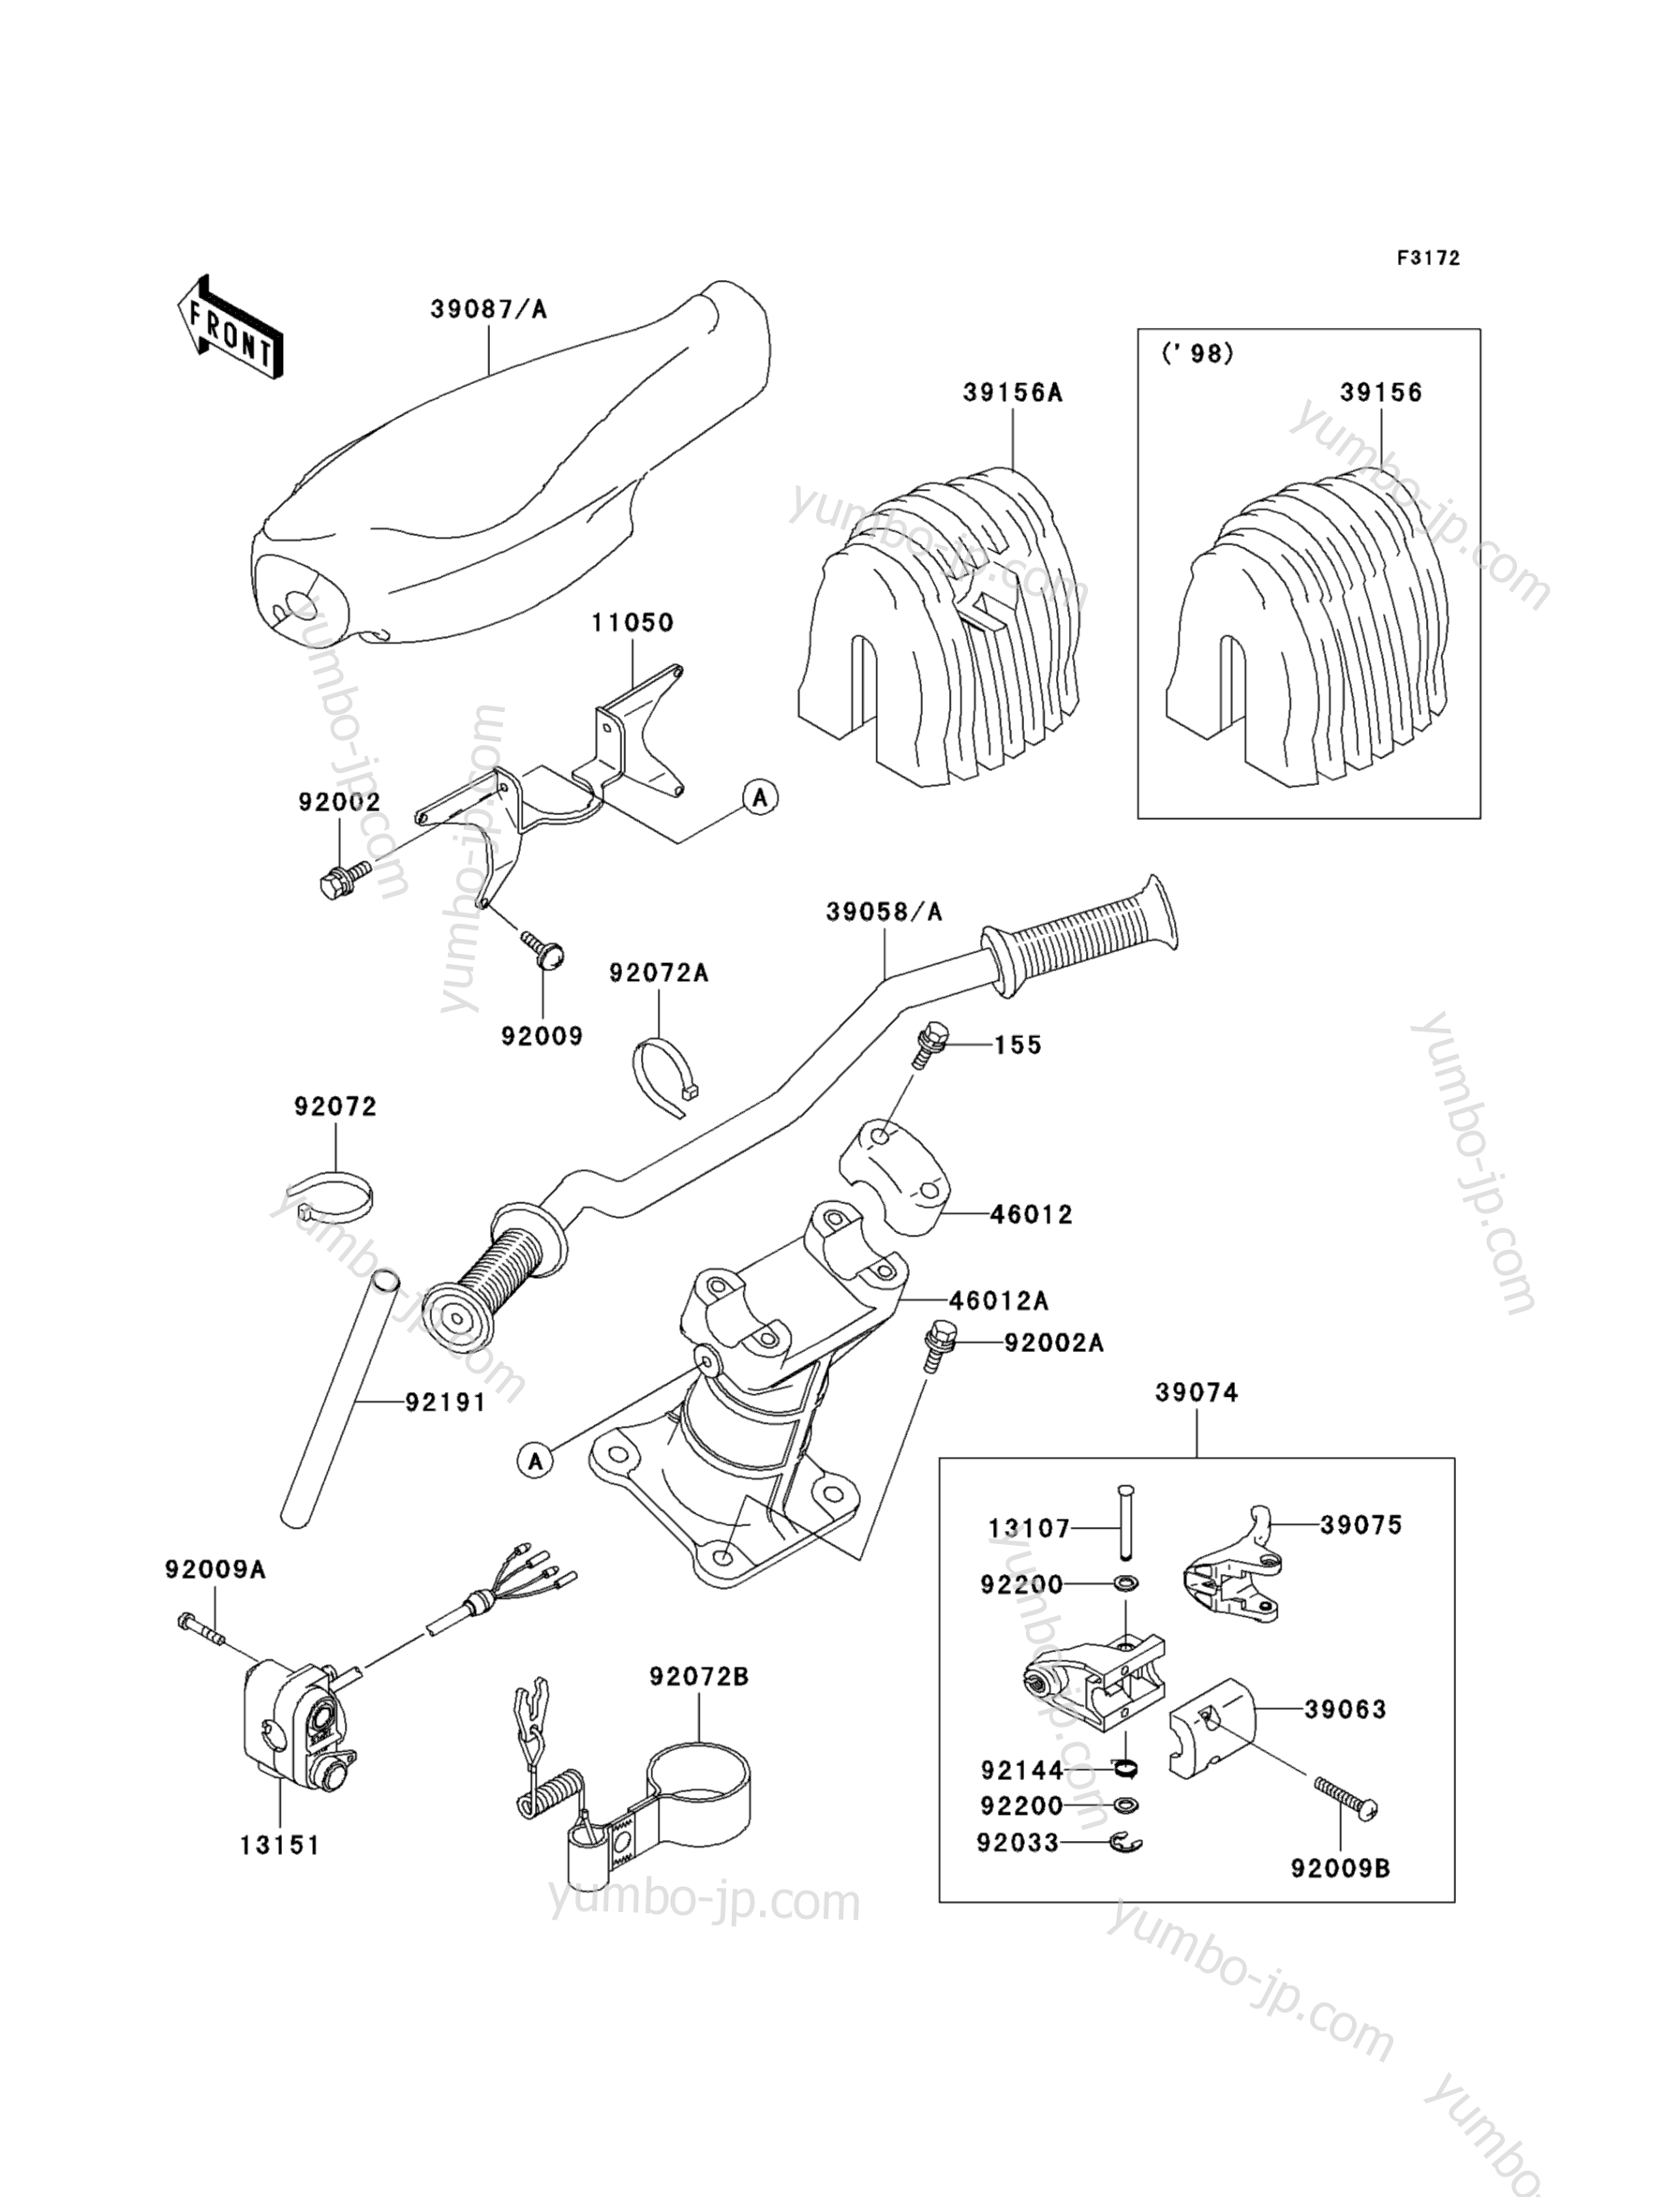 Румпель (рукоятка управления) для гидроциклов KAWASAKI JET SKI 1100 STX (JT1100-B2) 1999 г.